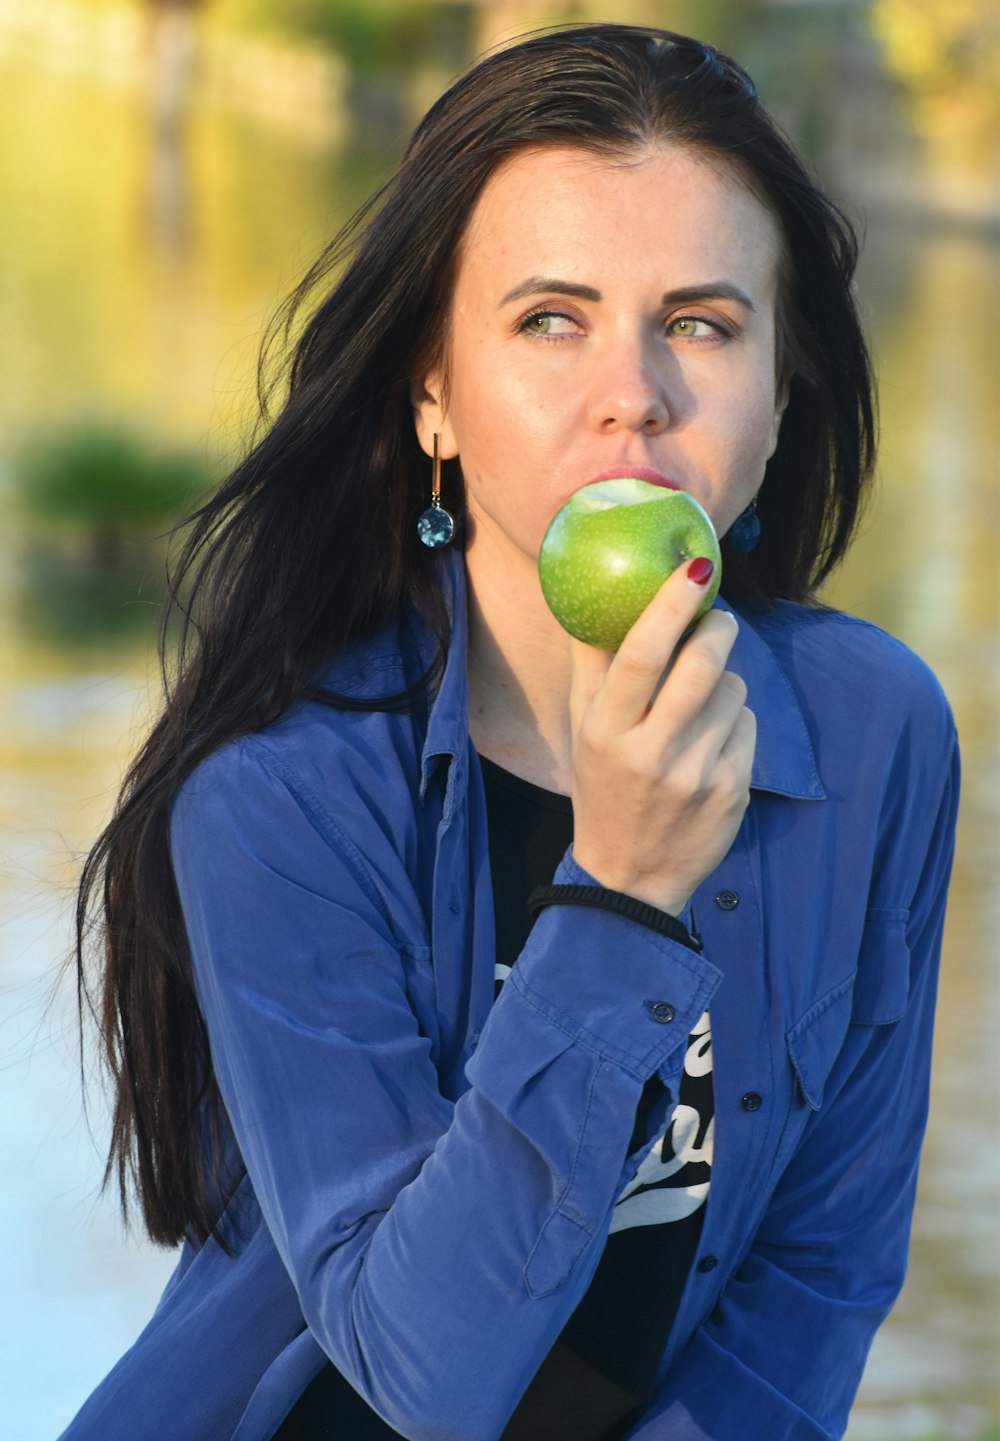 사과를 먹고 있는 파란 셔츠를 입은 여자